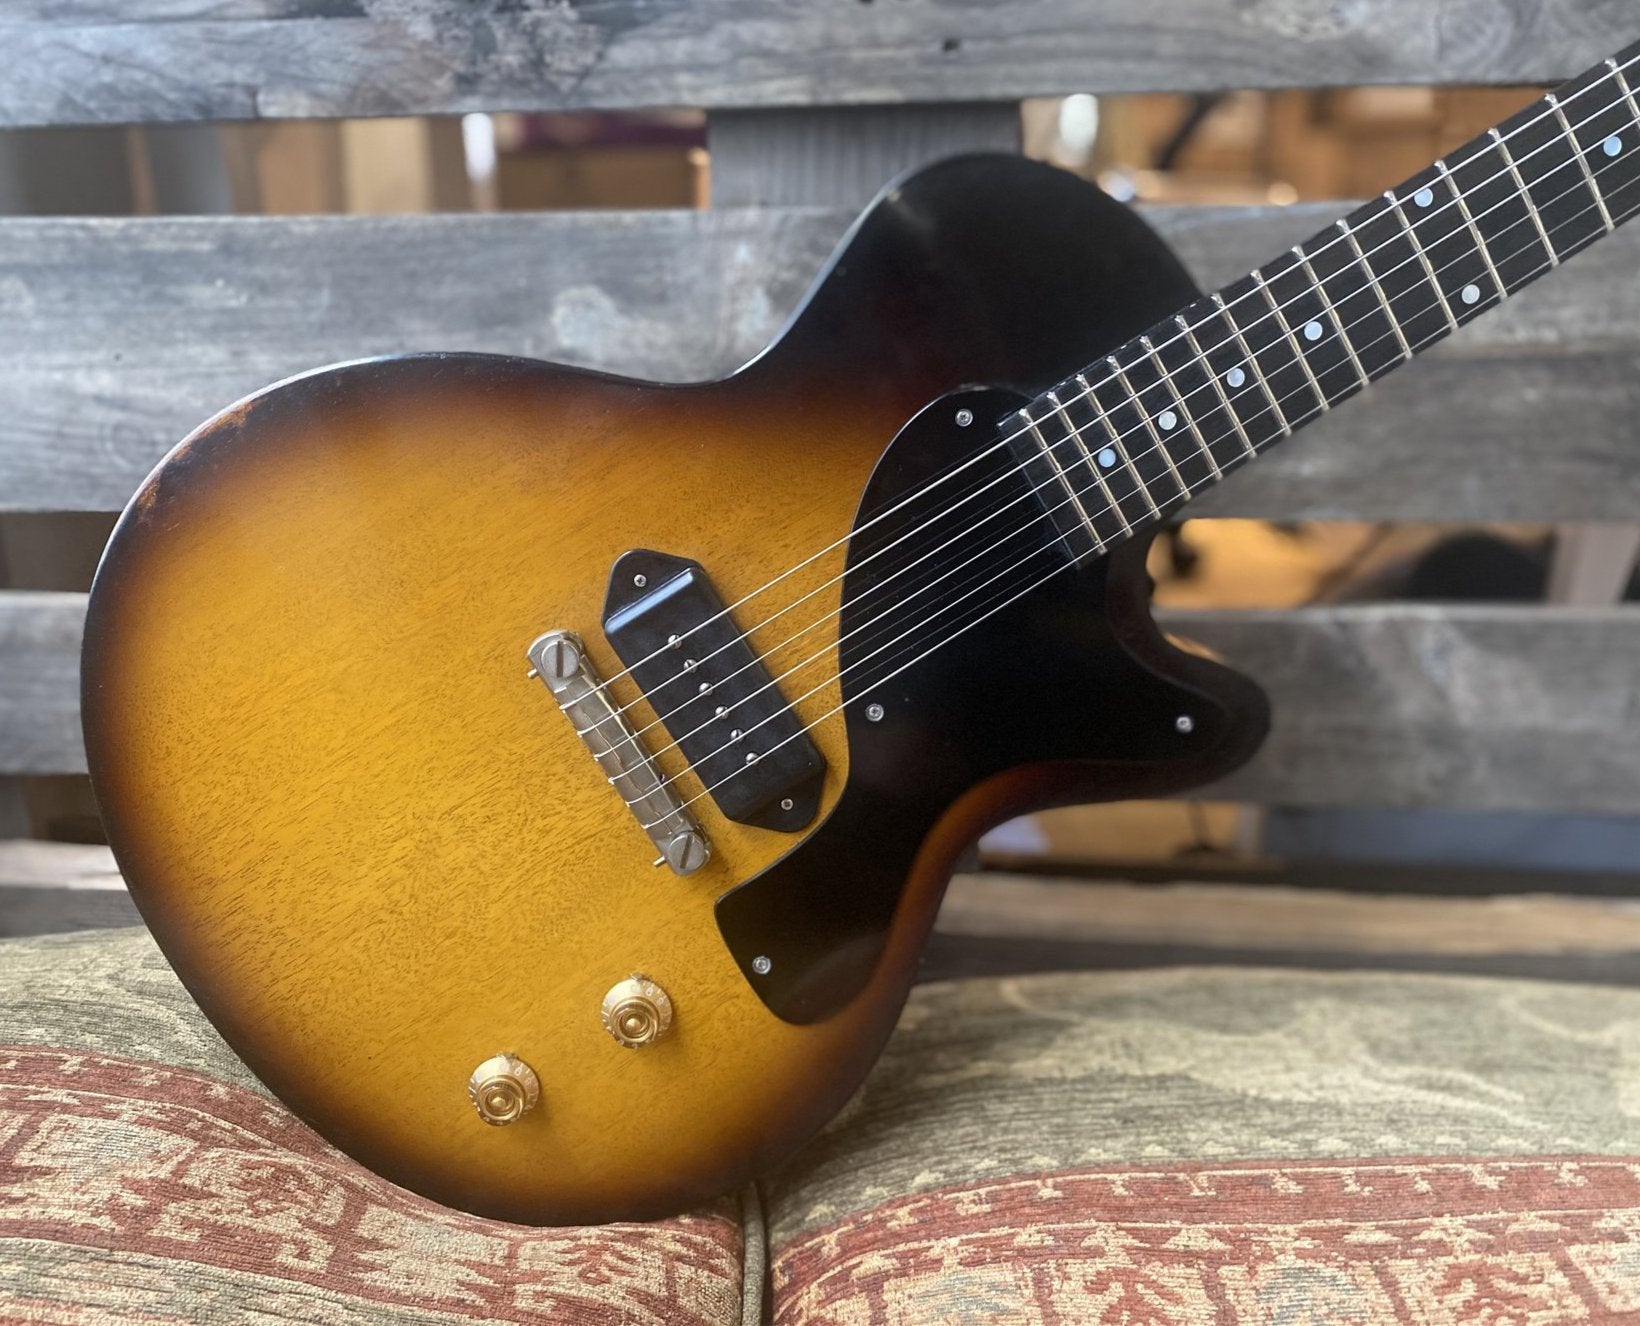 Eastman SB55/v-SB, Electric Guitar for sale at Richards Guitars.